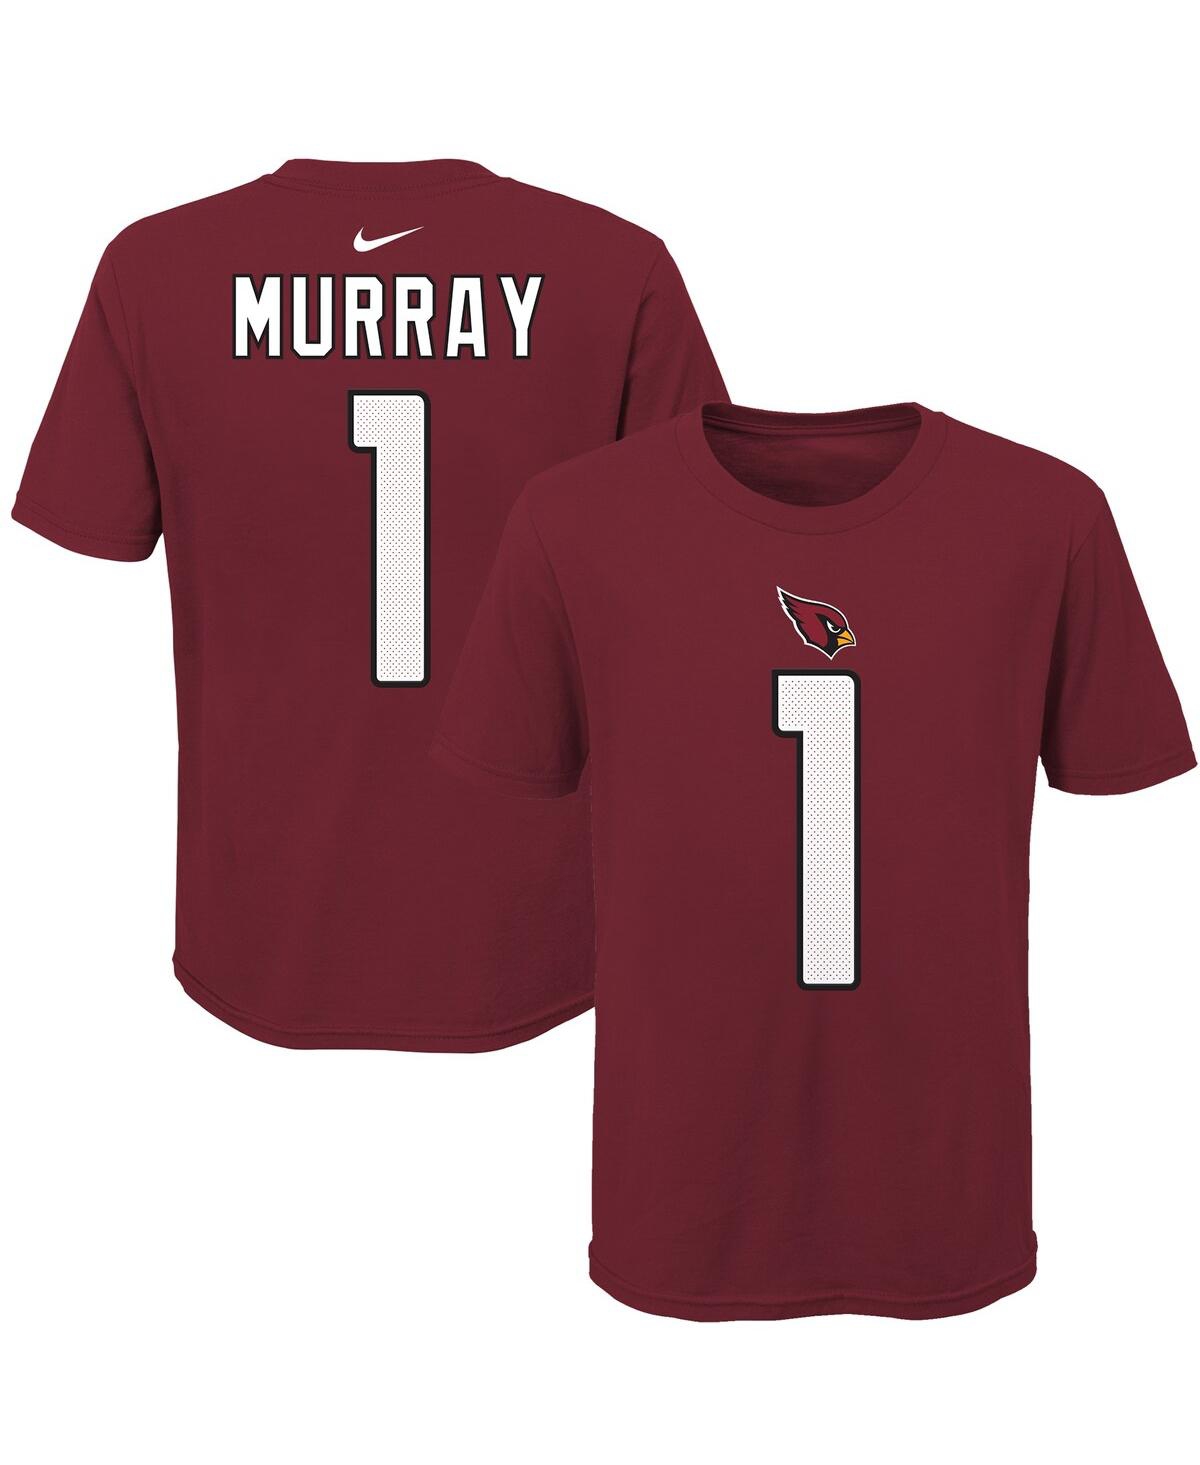 Nike Kids' Big Boys, Girls And  Cardinal Arizona Cardinals Logo Kyler Murray Player Name And Number T-shirt